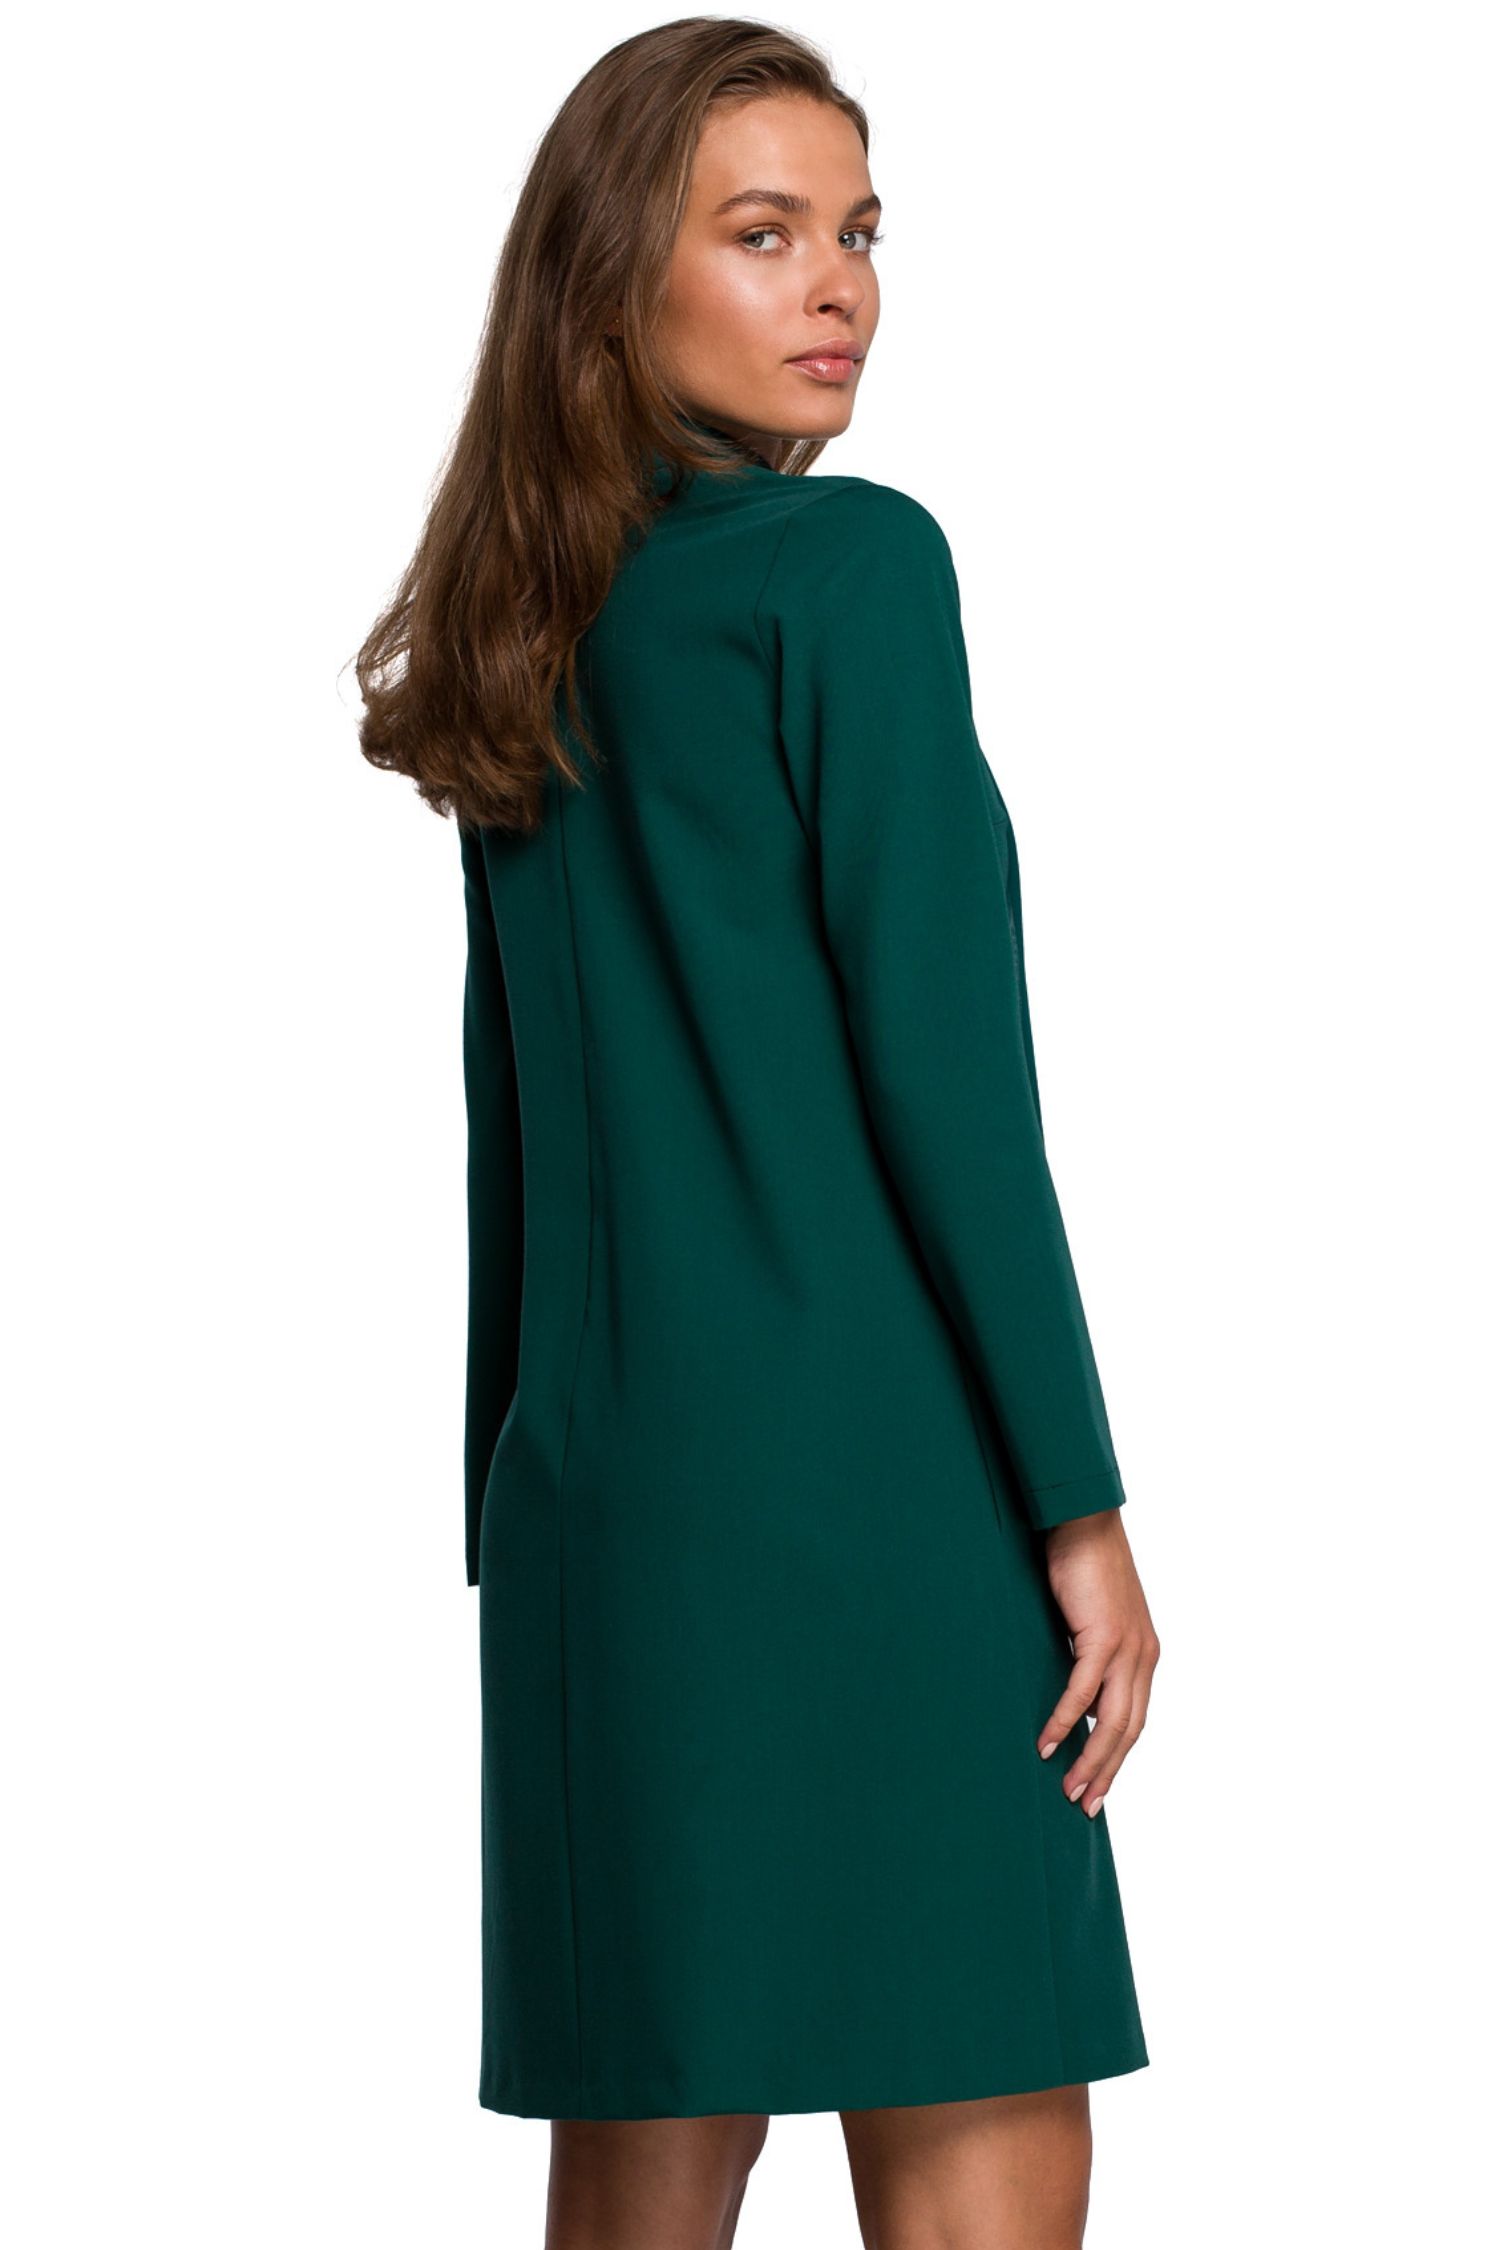 Opis: Sukienka trapezowa elegancka z dekoltem V i szyfonowym szalem zielona.